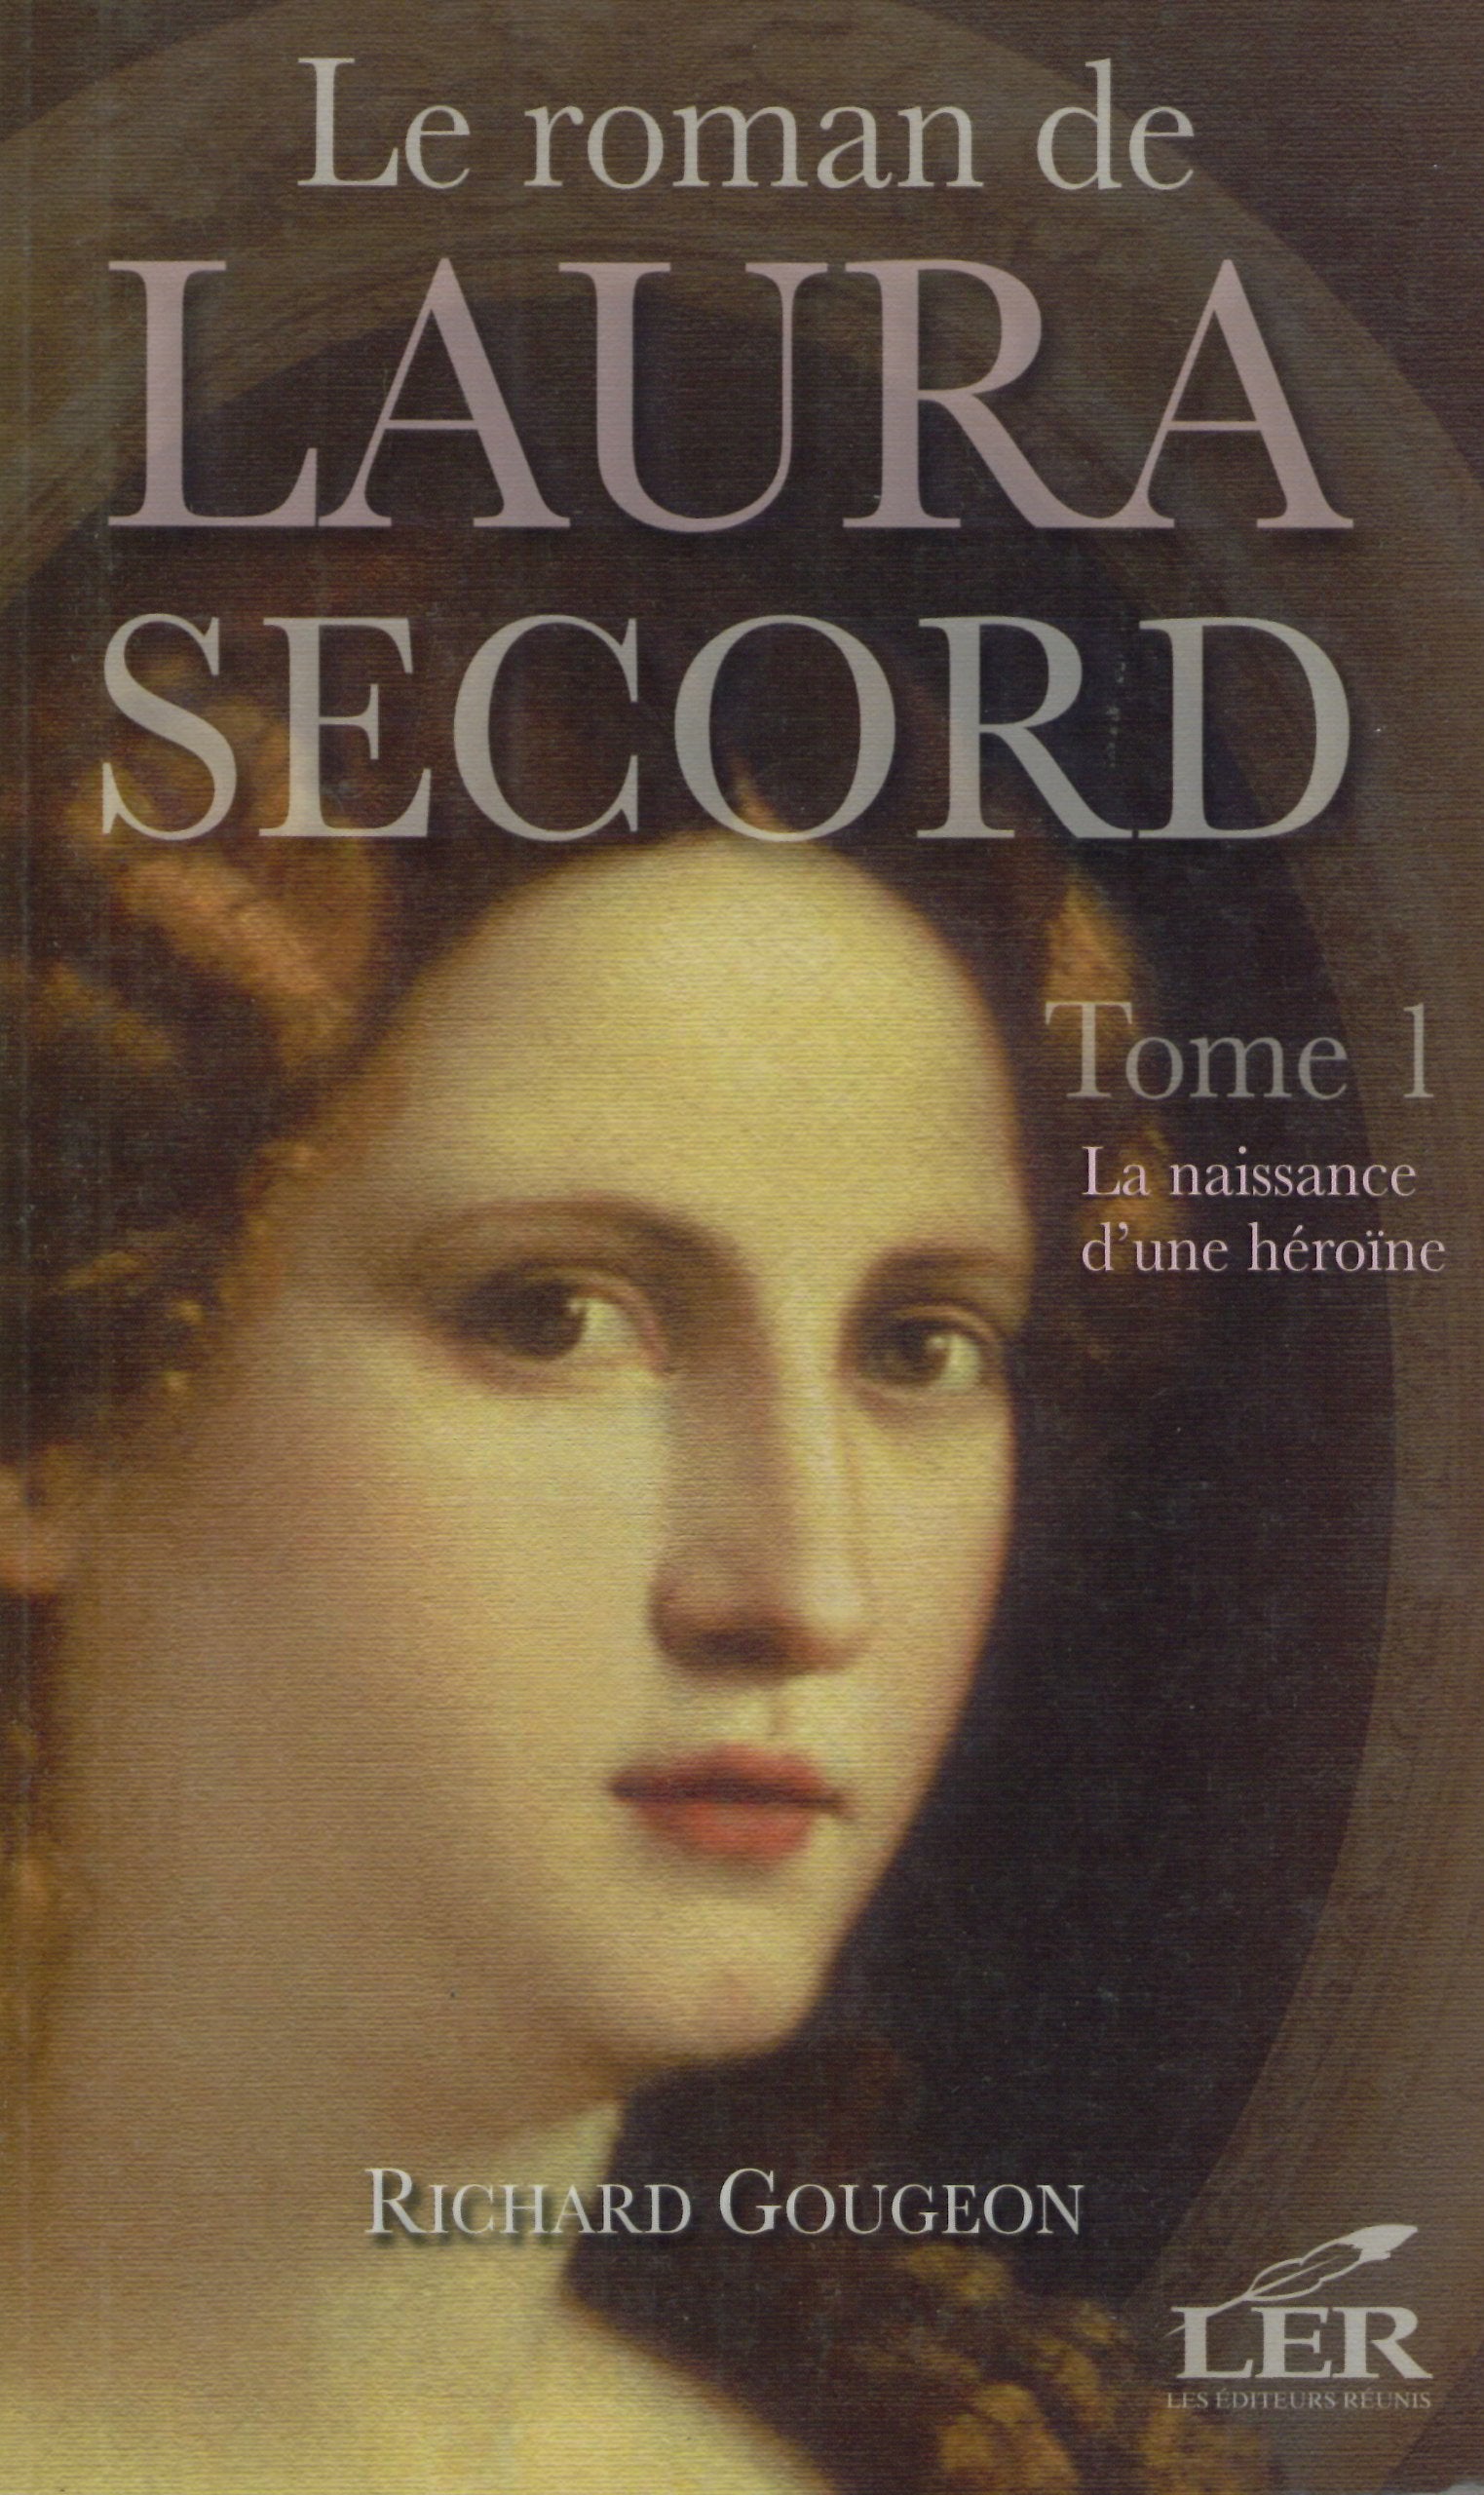 Le roman de Laura Secord # 1 : La naissance d'une héroïne - Richard Gougeon